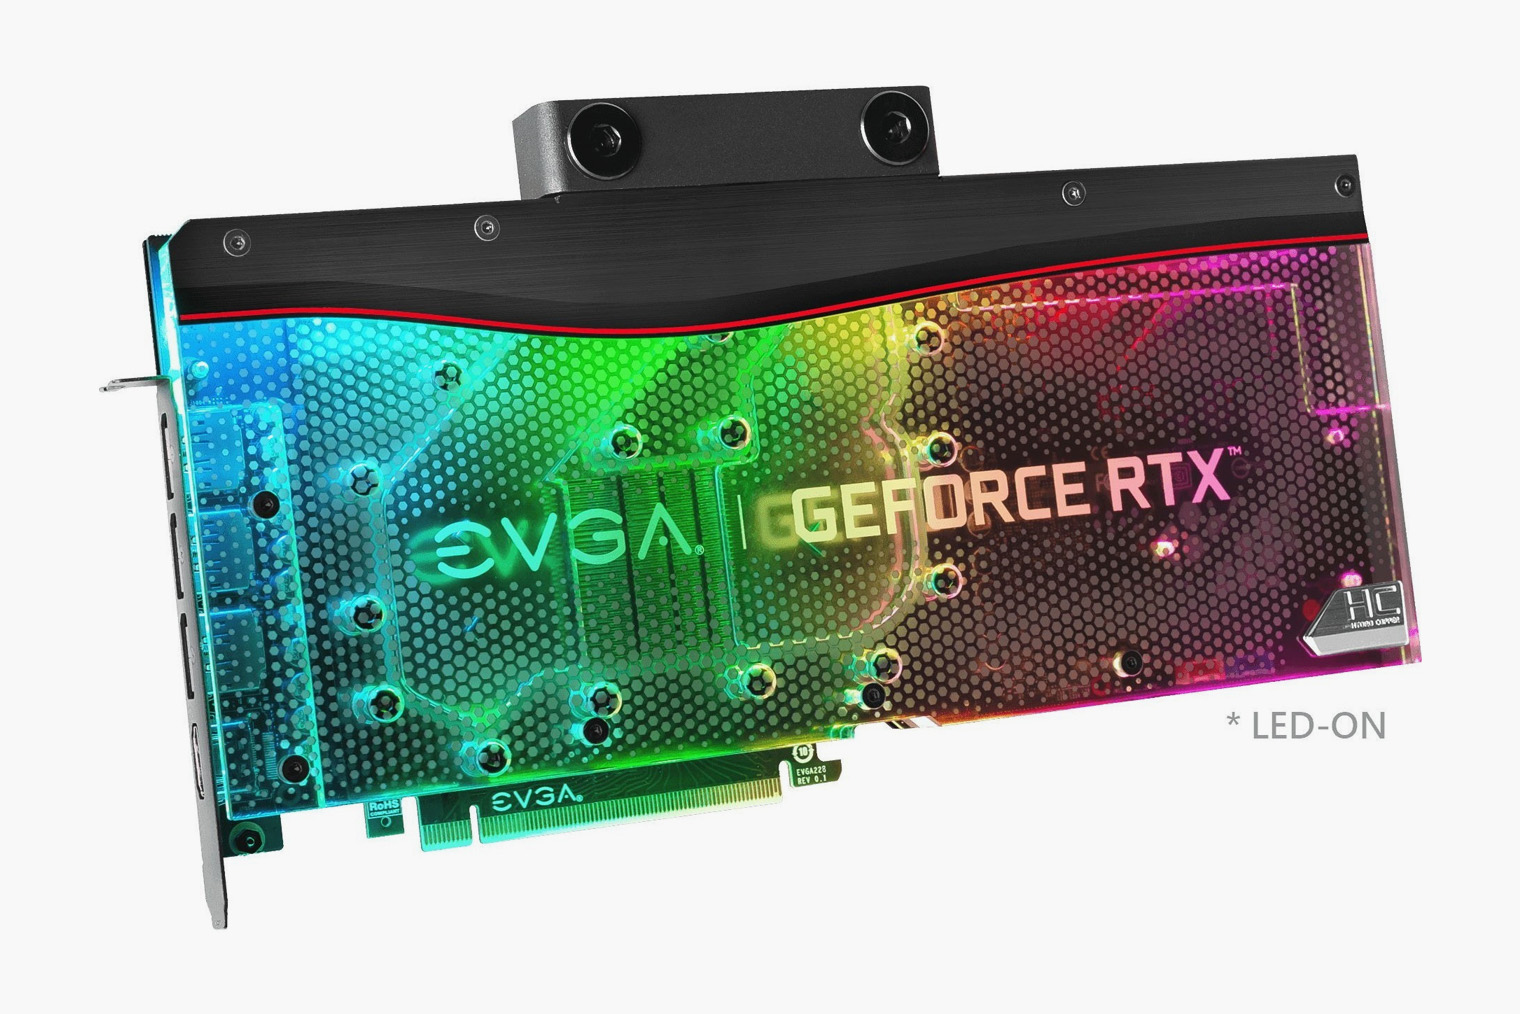 EVGA GeForce RTX 3080 FTW3 Ultra Hydro Cooper Gaming c водяным охлаждением считается одной из самых удачных ревизий этой модели. Обойдется карта в 102 000 ₽